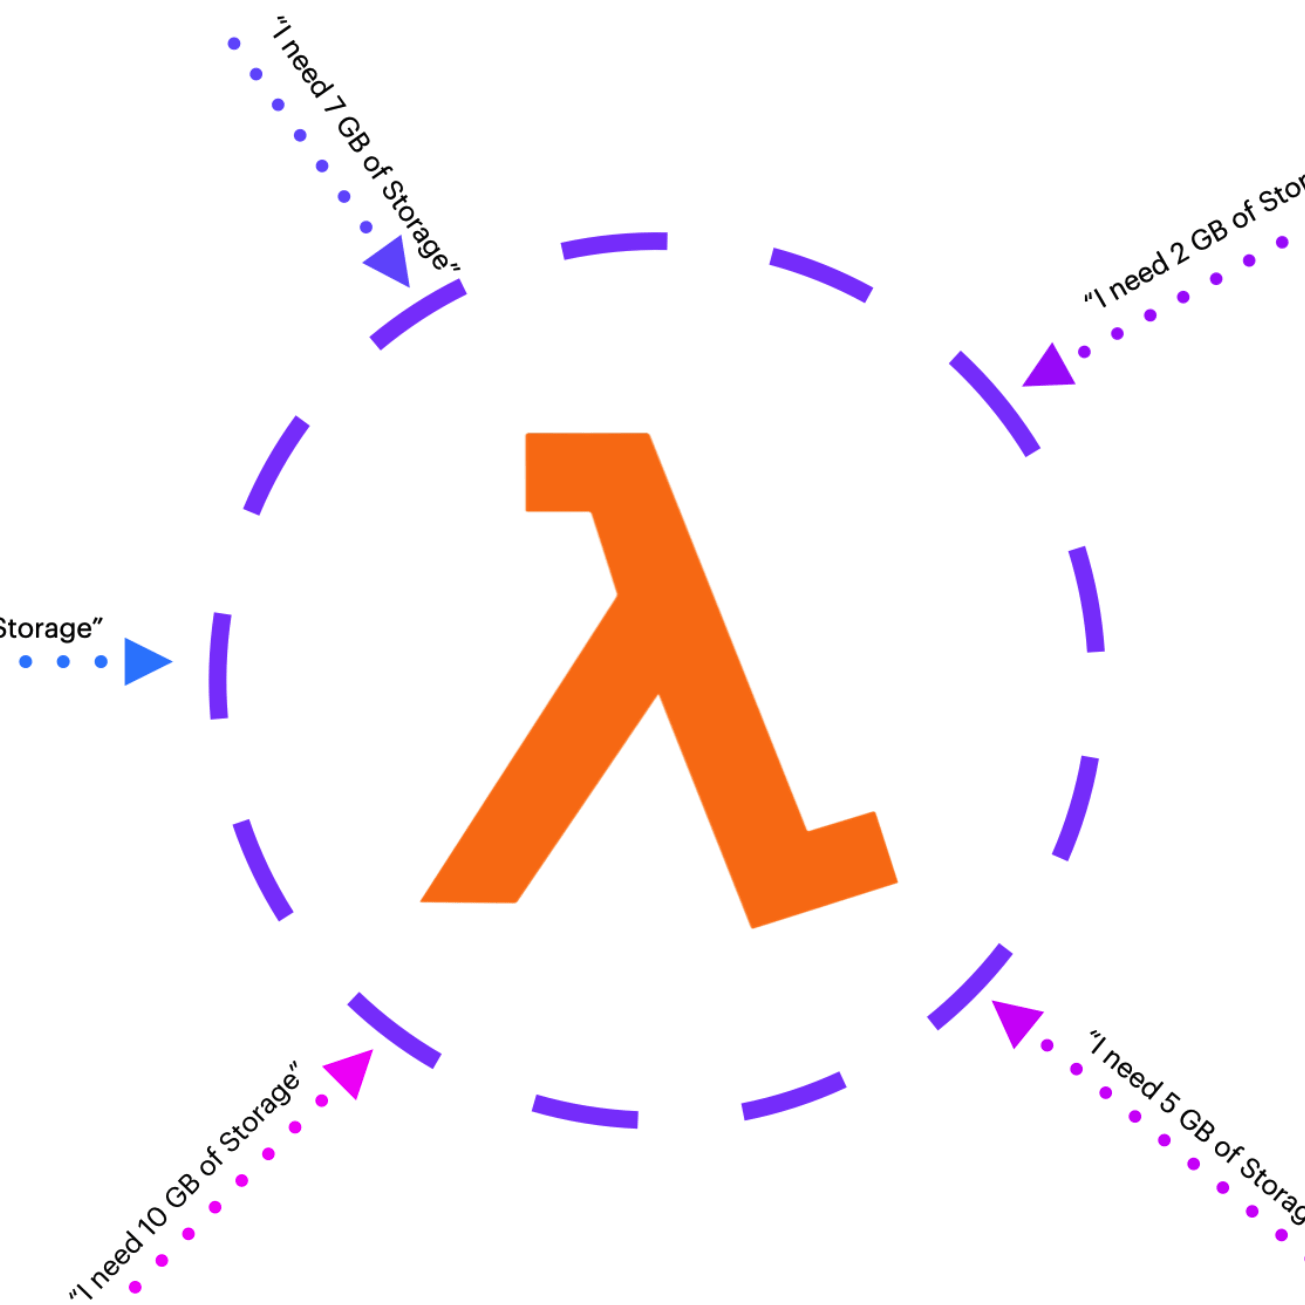 A custom diagram showcasing dynamic ephemeral storage with lambda